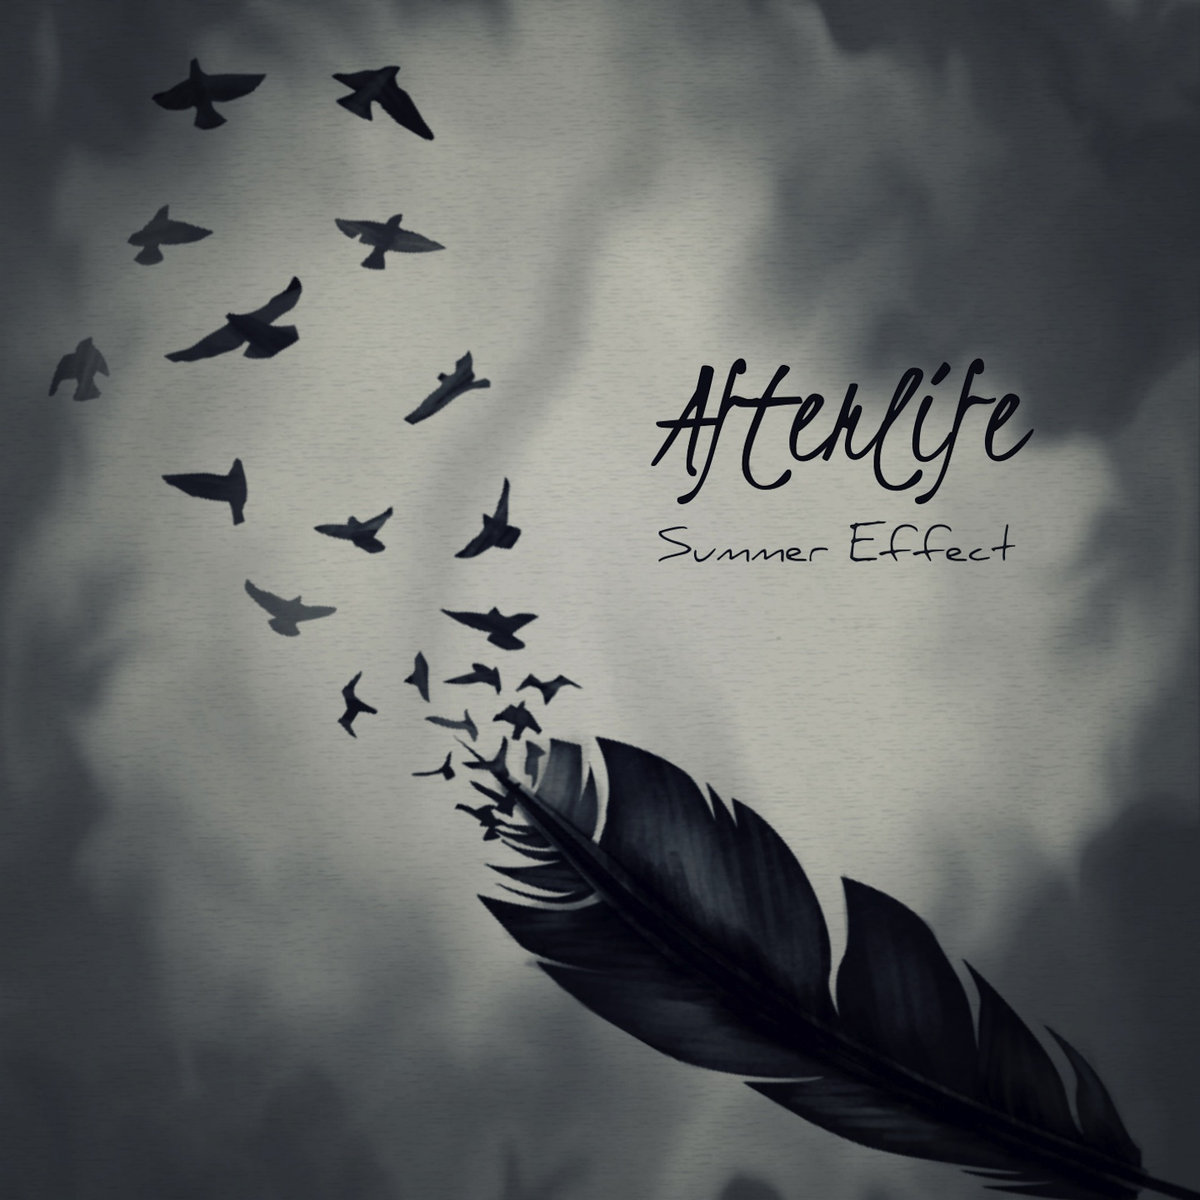 Summer Effect – Afterlife